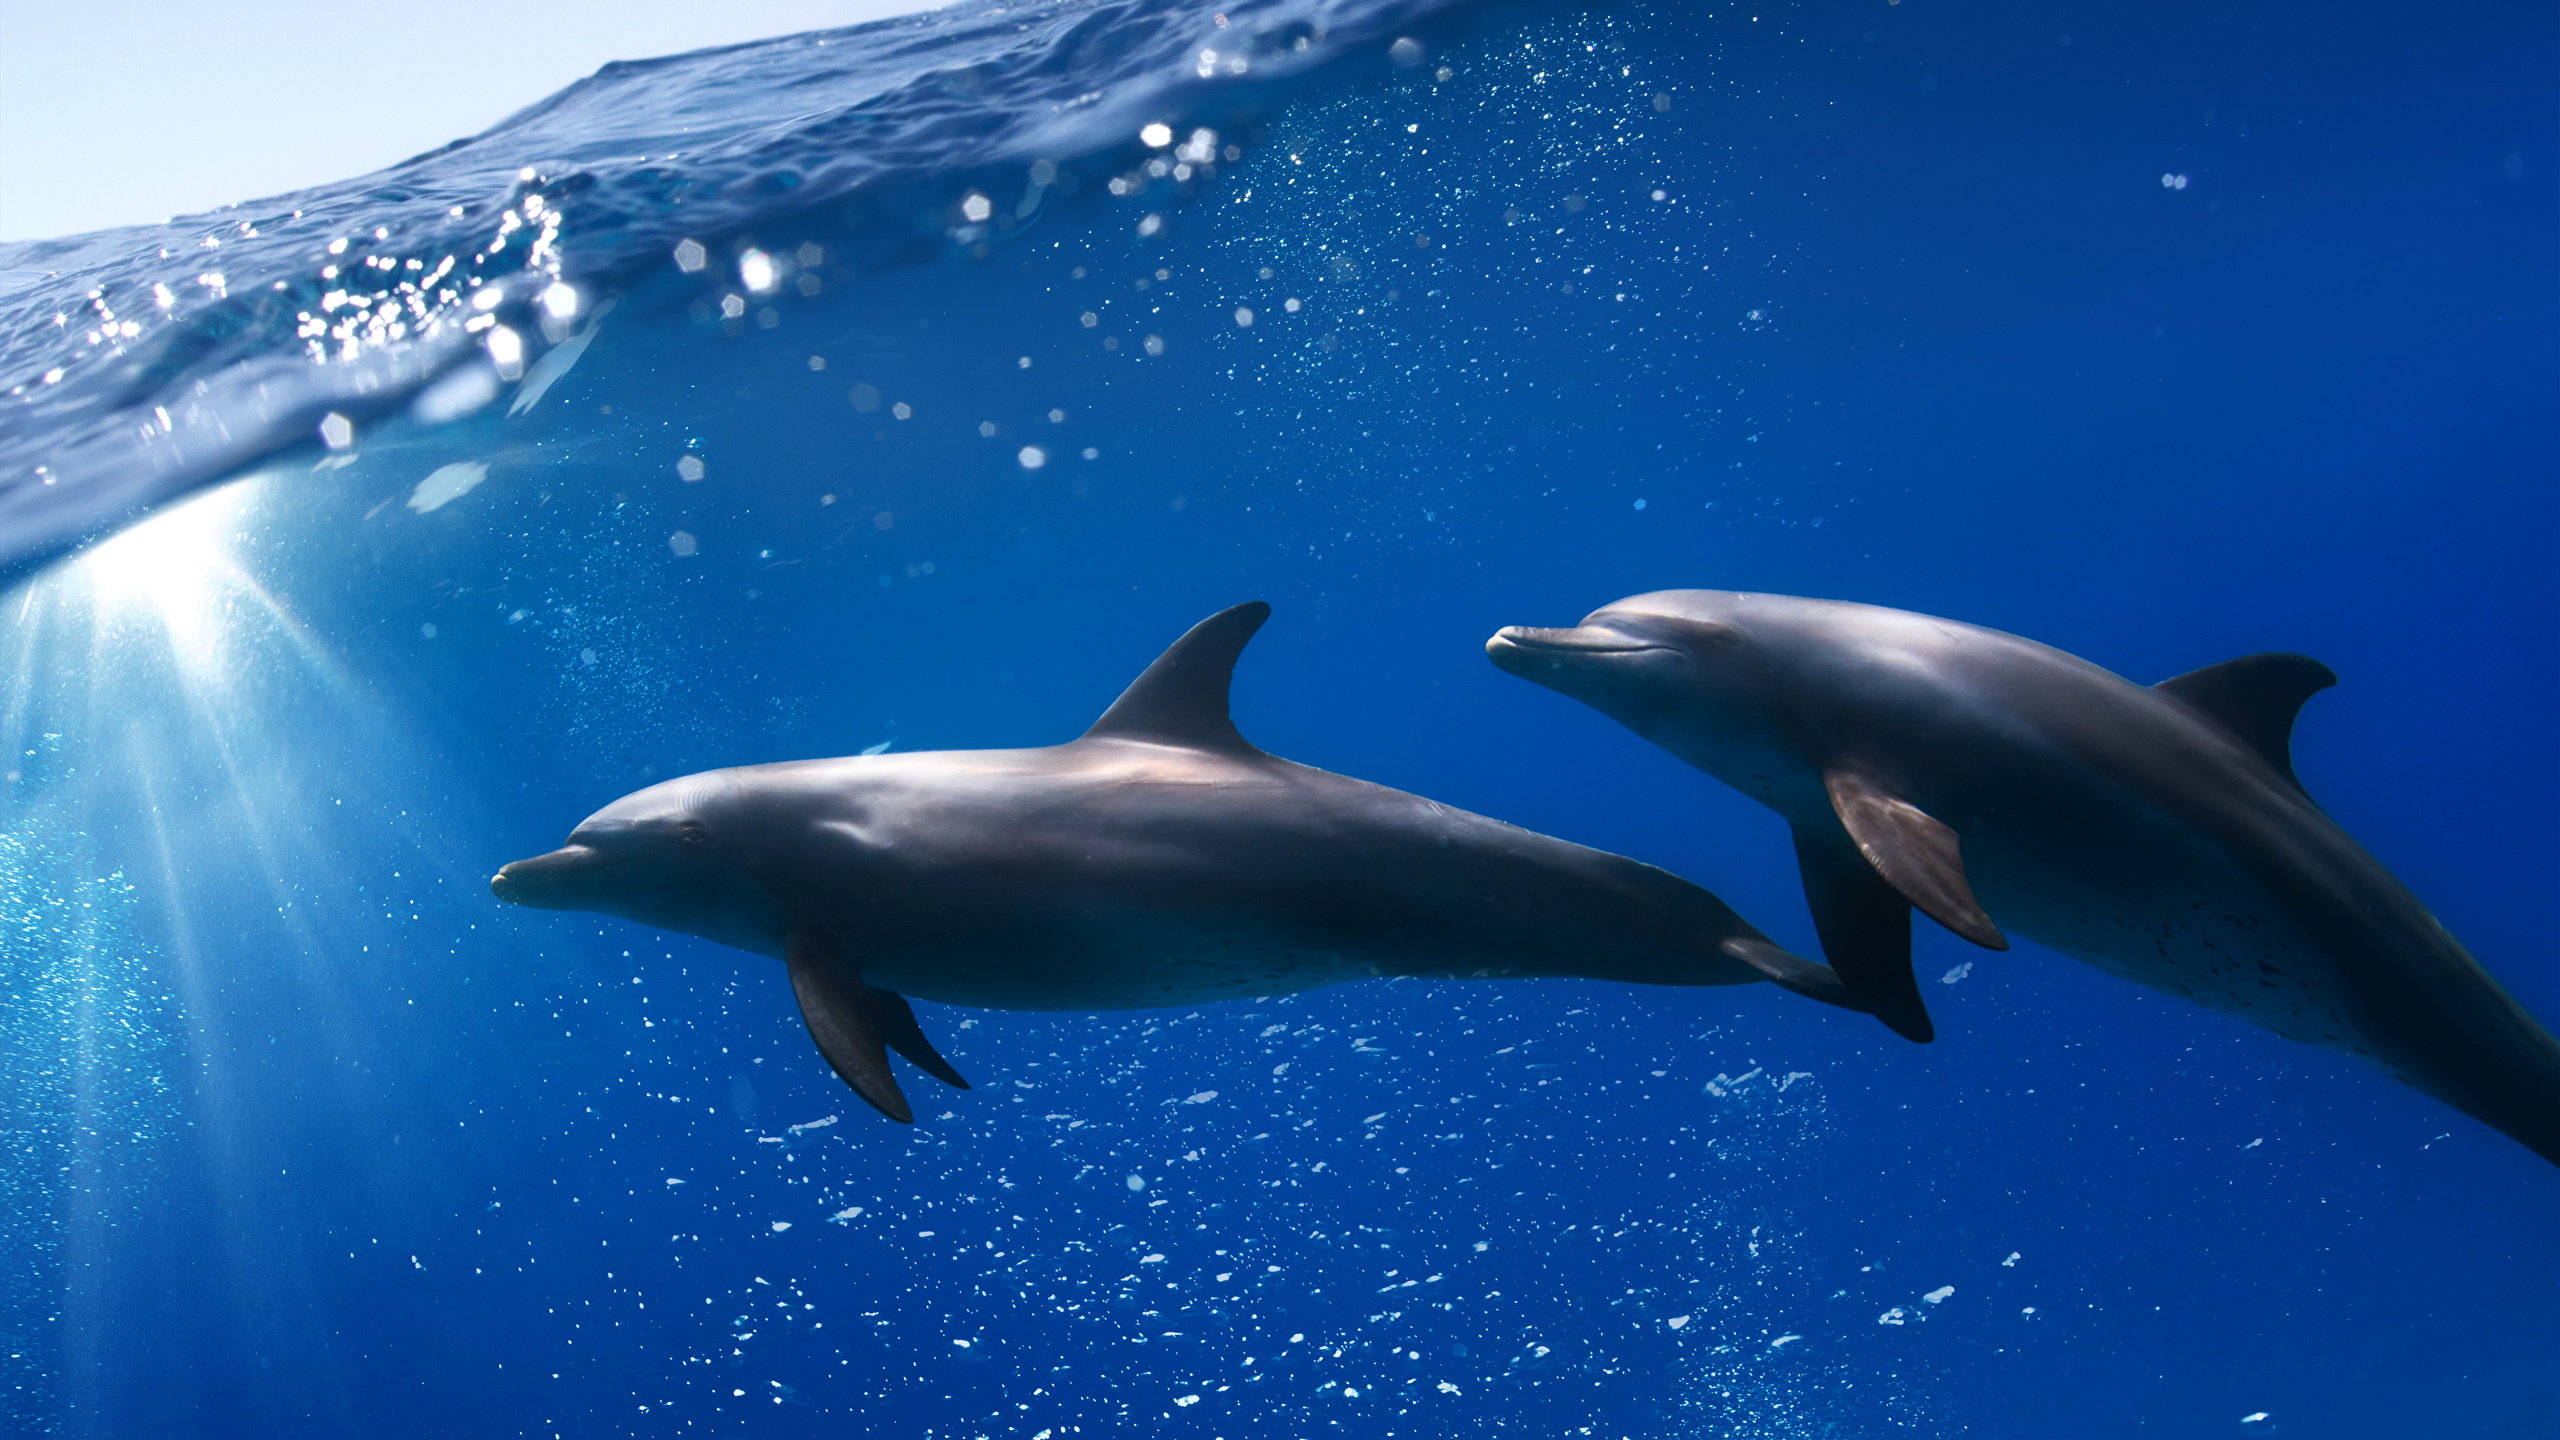 壁紙 2560x1440 アンダーウォーターワールド イルカ 水 2 二つ 動物 ダウンロード 写真